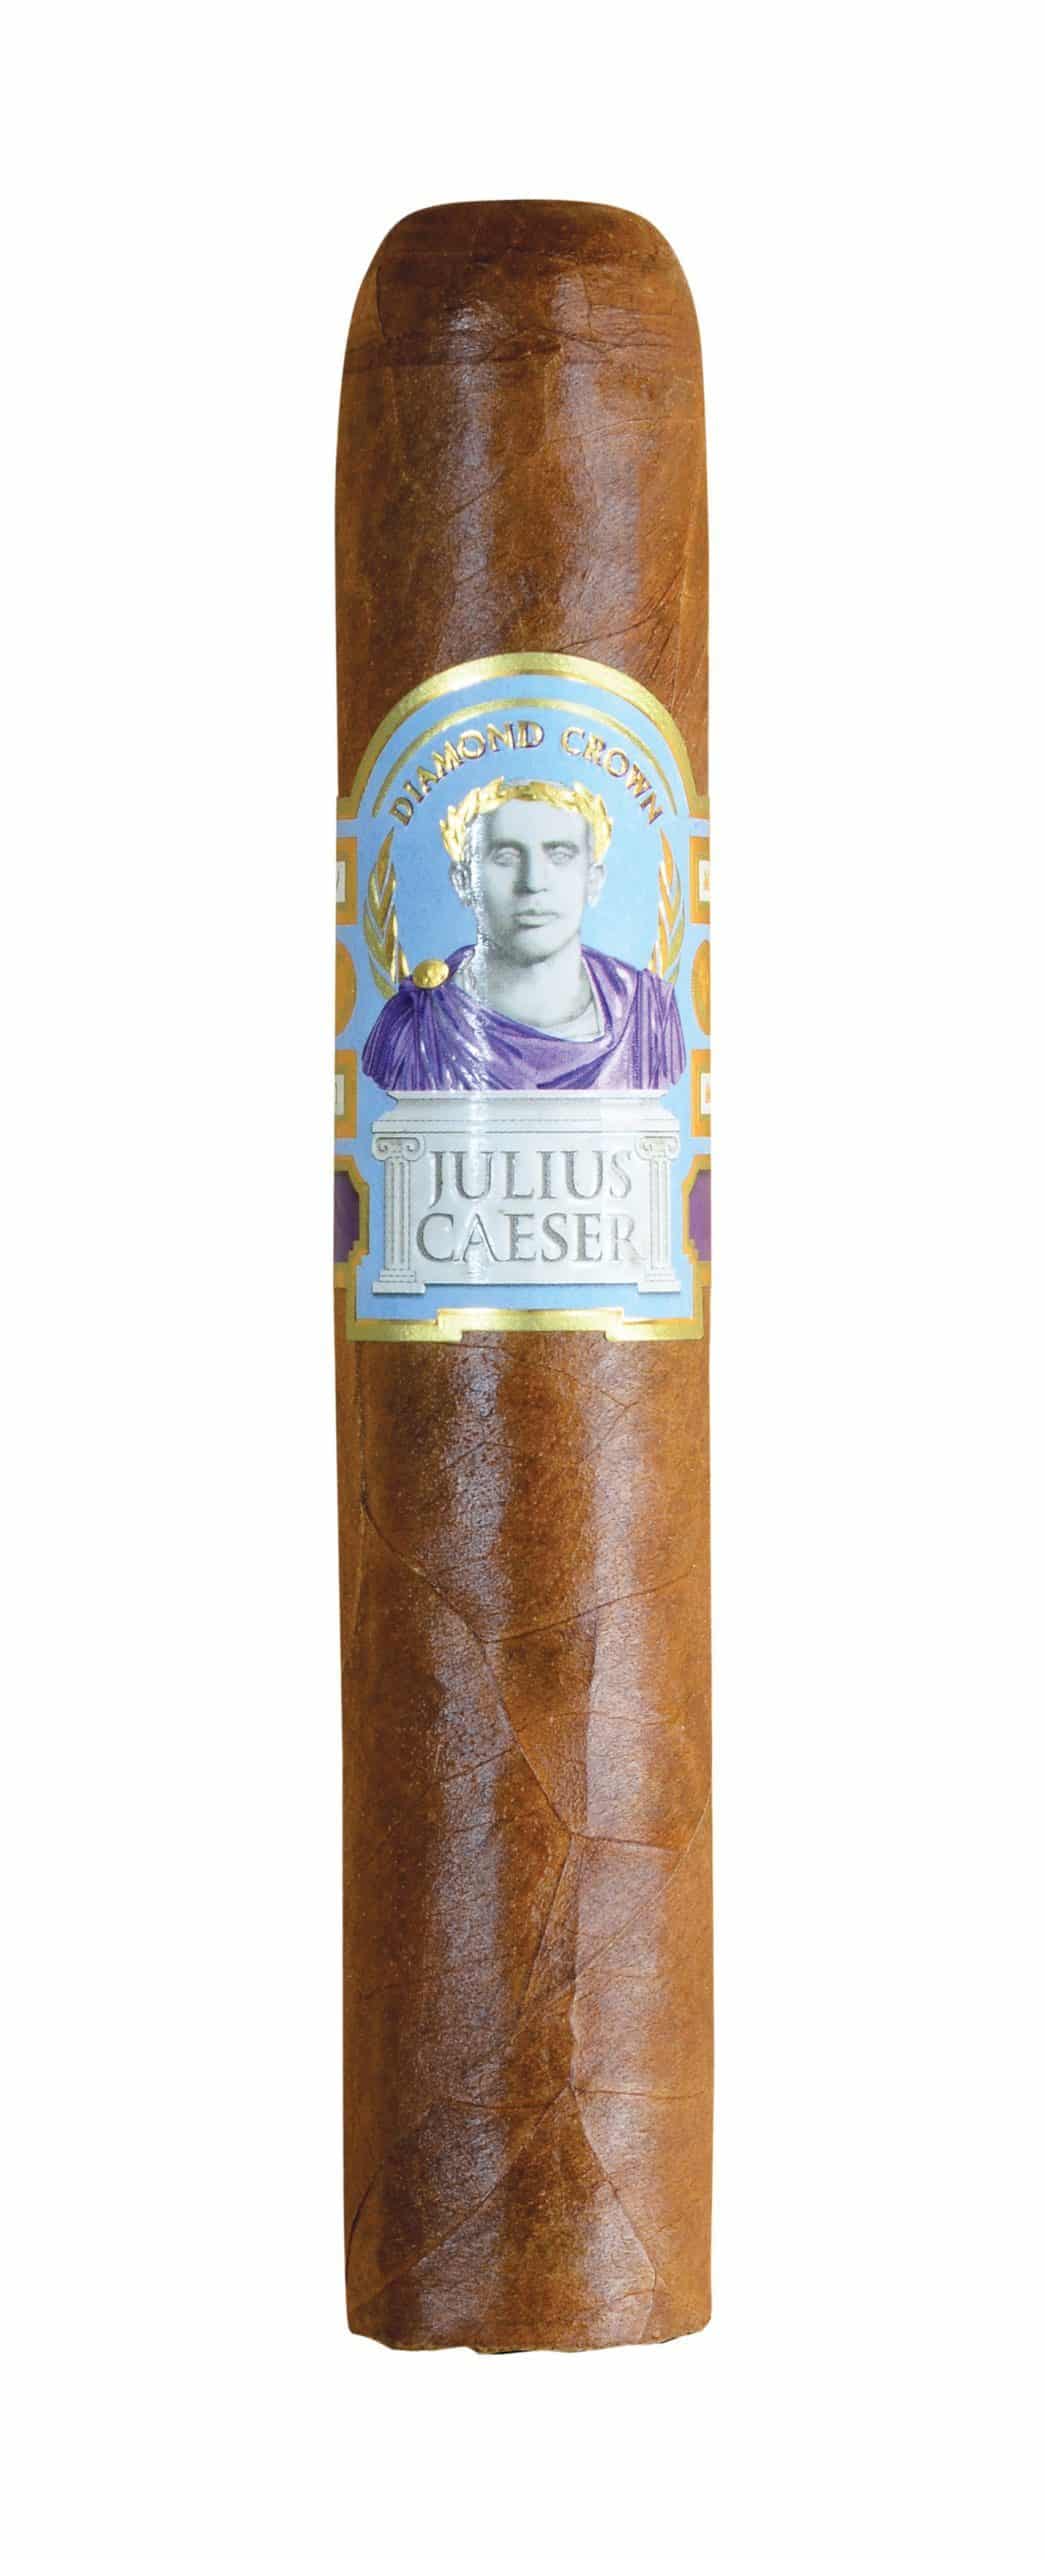 diamond crown julius caeser robusto single cigar